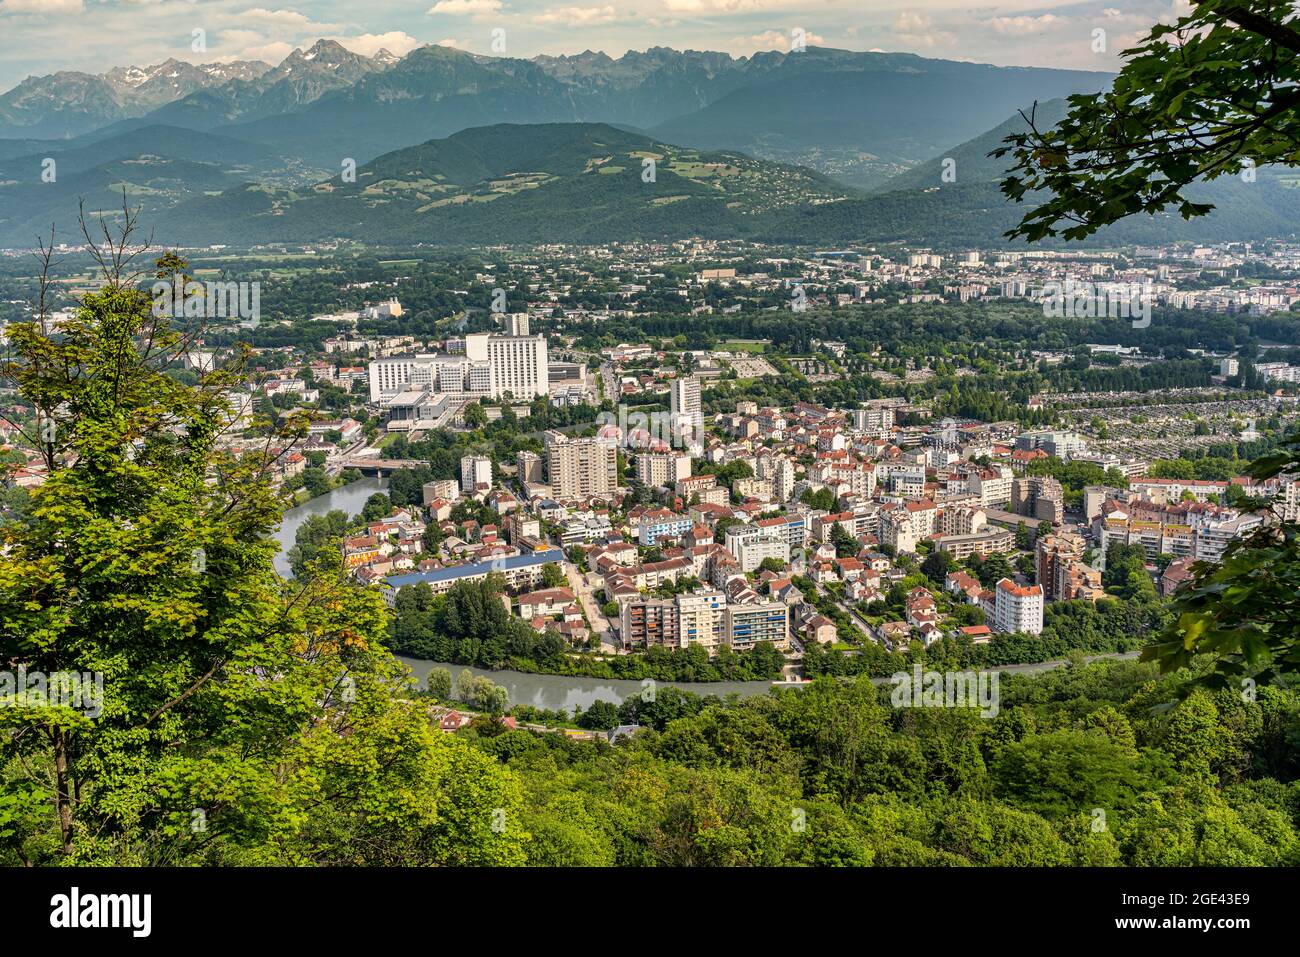 La città di Grenoble è presente in tutti gli eventi della storia francese. Oggi è il centro di vari progressi sociali e scientifici.Grenoble, Francia Foto Stock